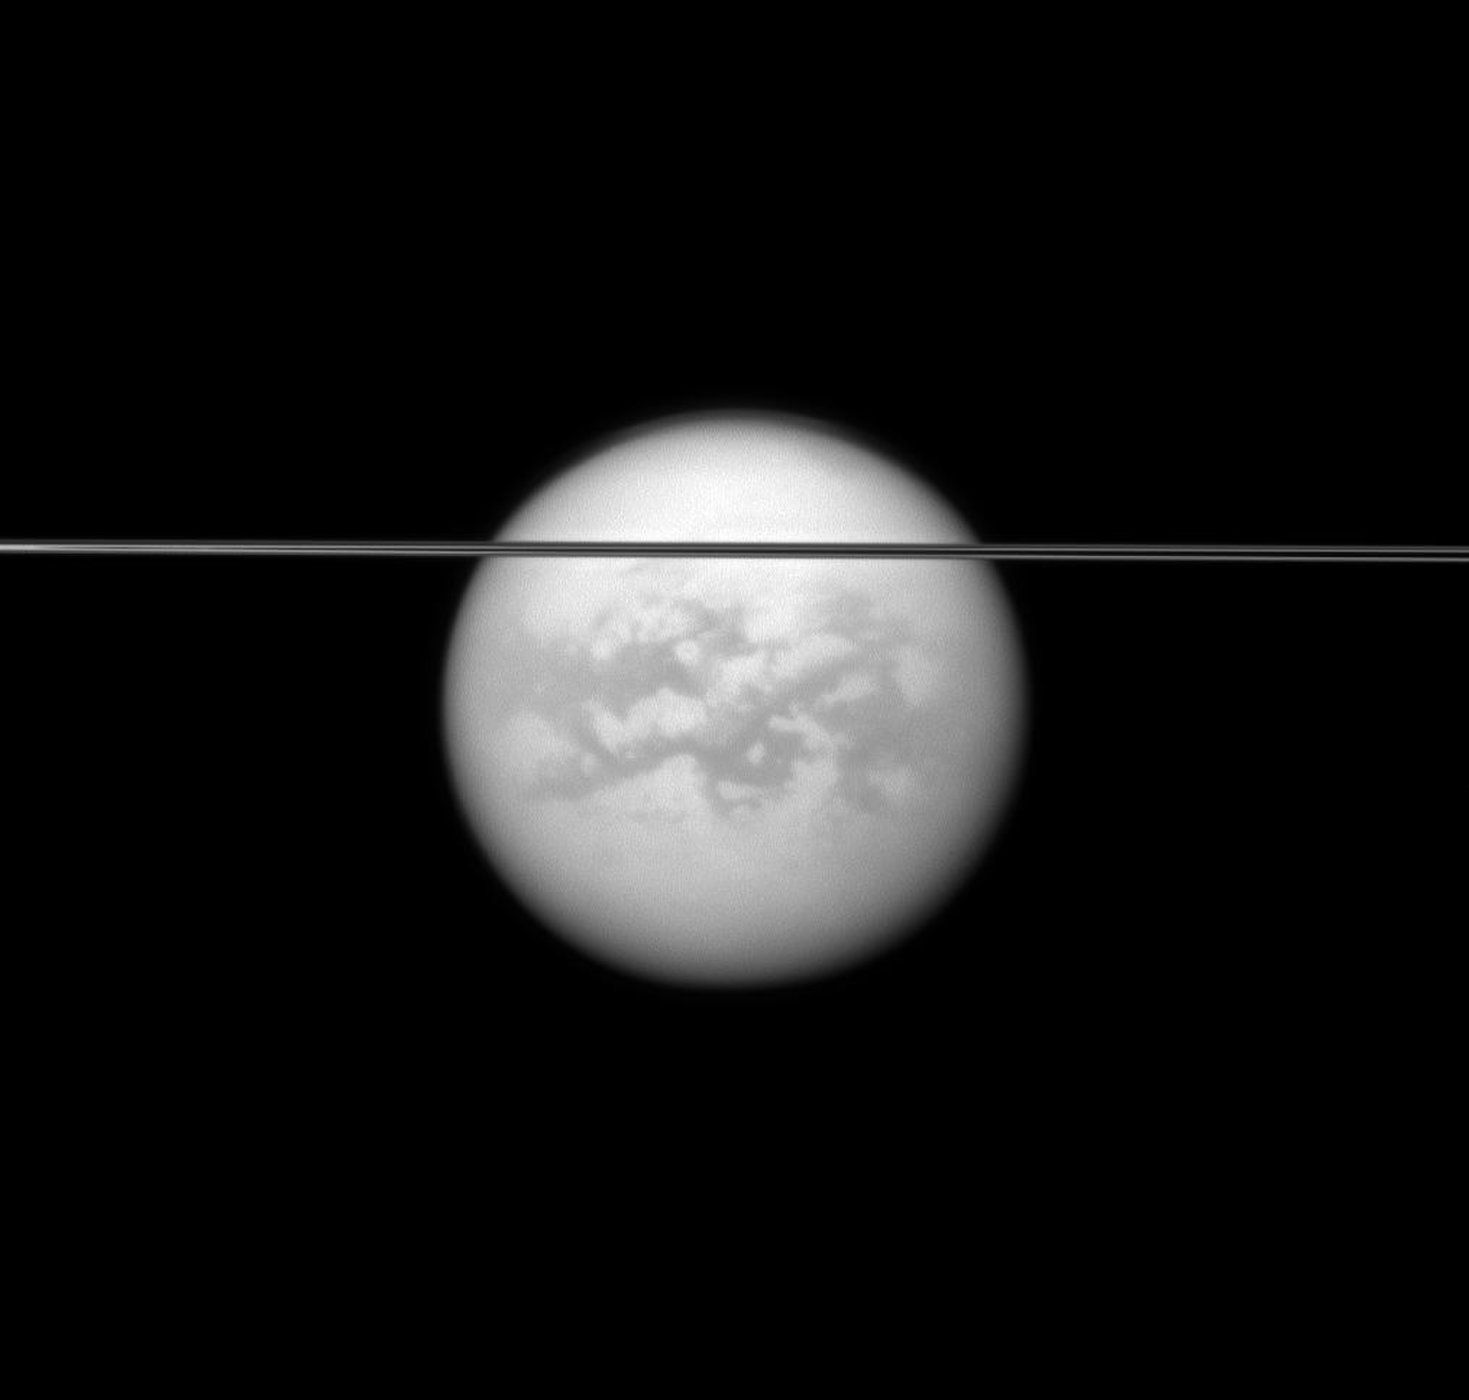 Спутник плотной атмосферой. Титан Спутник Сатурна. Атмосфера титана спутника Сатурна. Титан Спутник спутники Сатурна. Планета Титан Кассини.